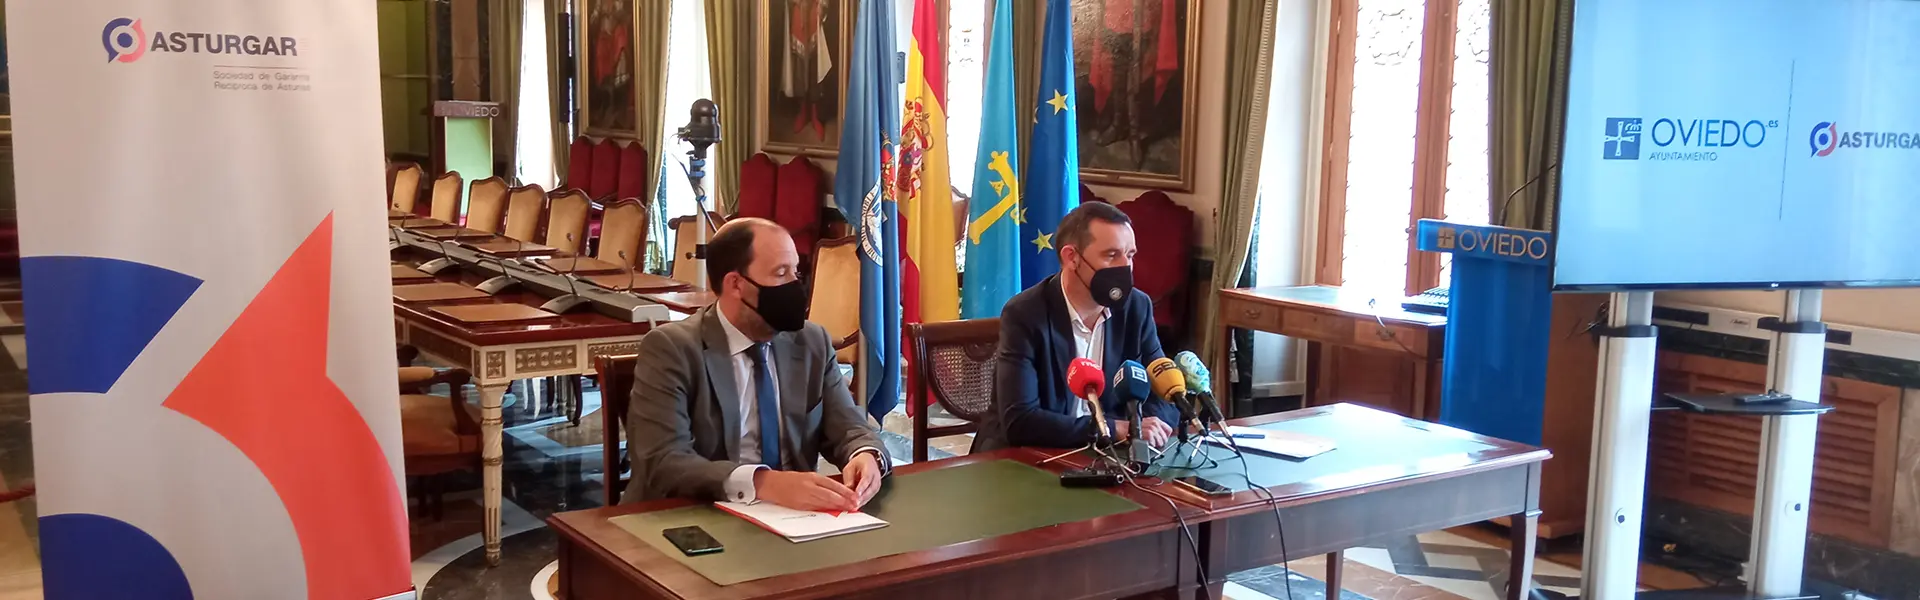 Asturgar renueva su convenio con el Ayuntamiento de Oviedo tras un ano en el que se triplico su actividad en la ciudadon de pymes y autonomos hemeroteca cesgar web